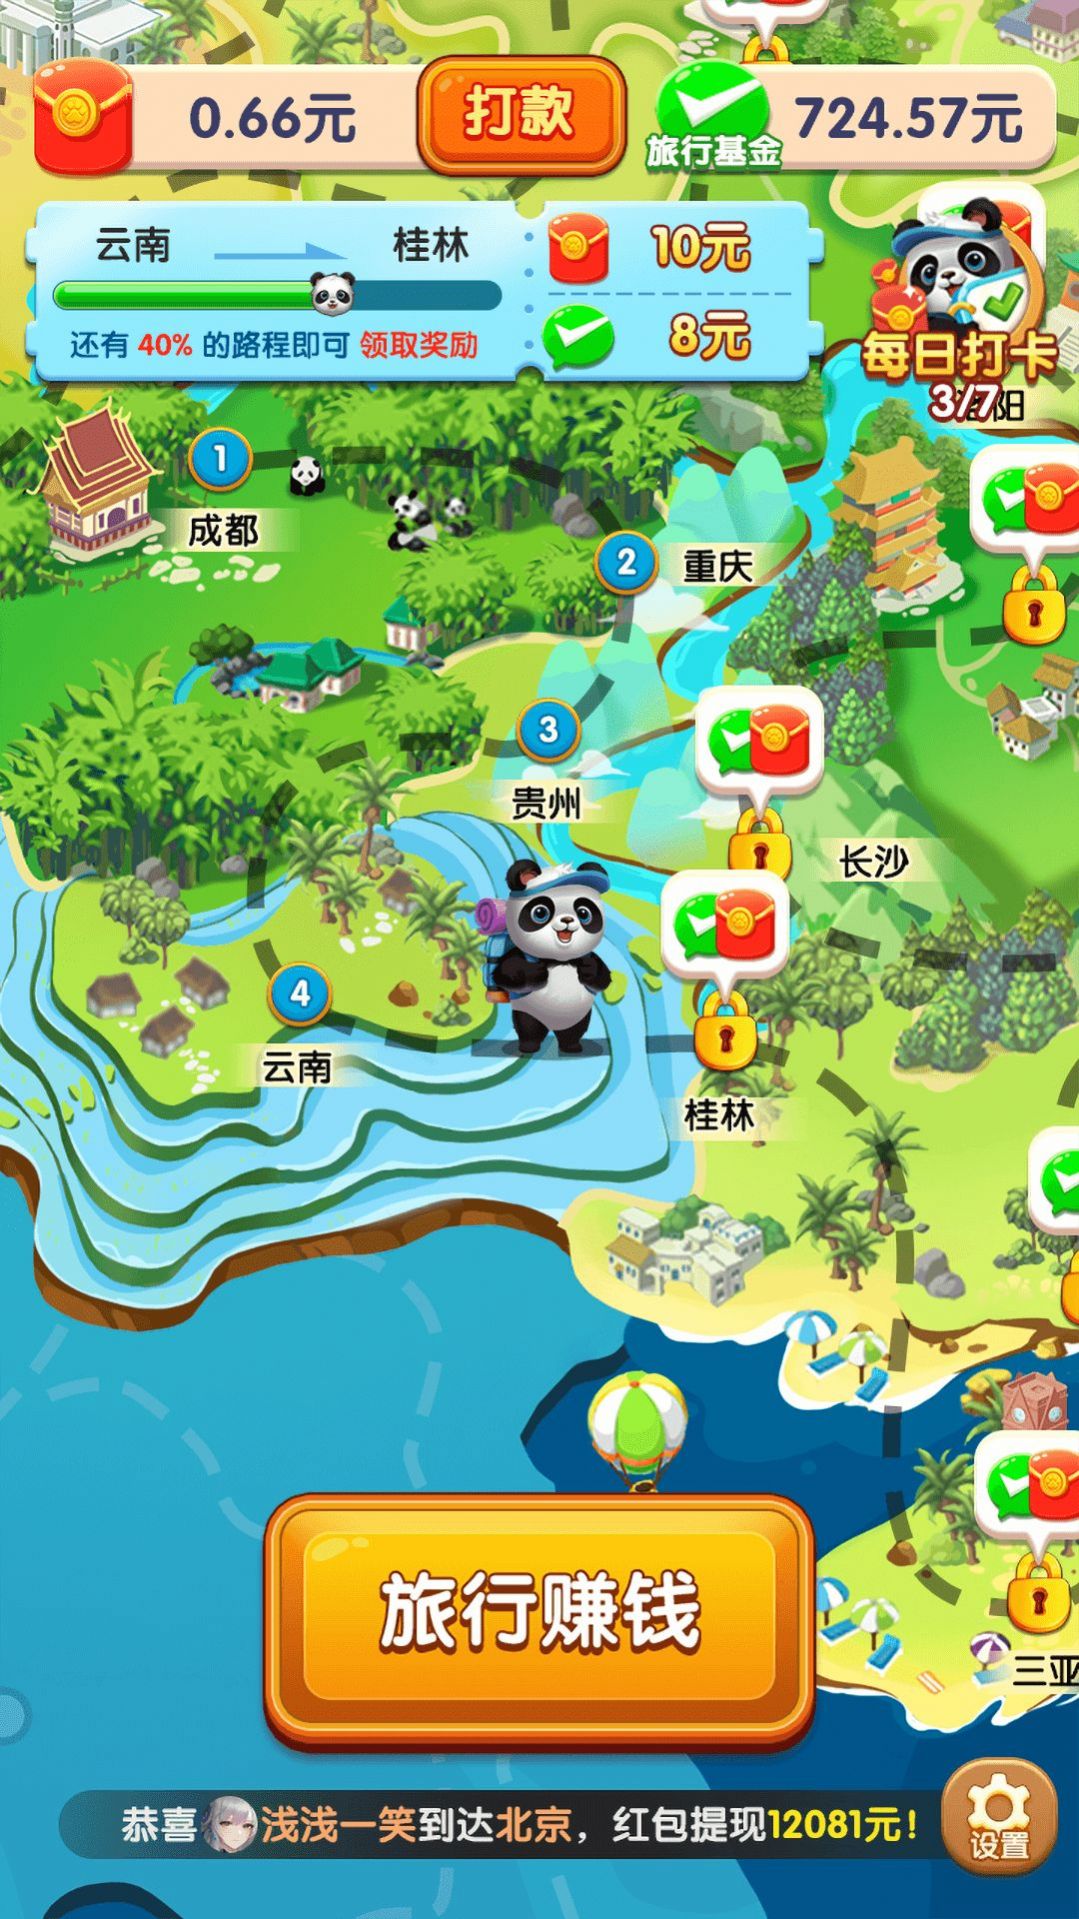 熊猫爱旅行1.2.4.0版截图(2)